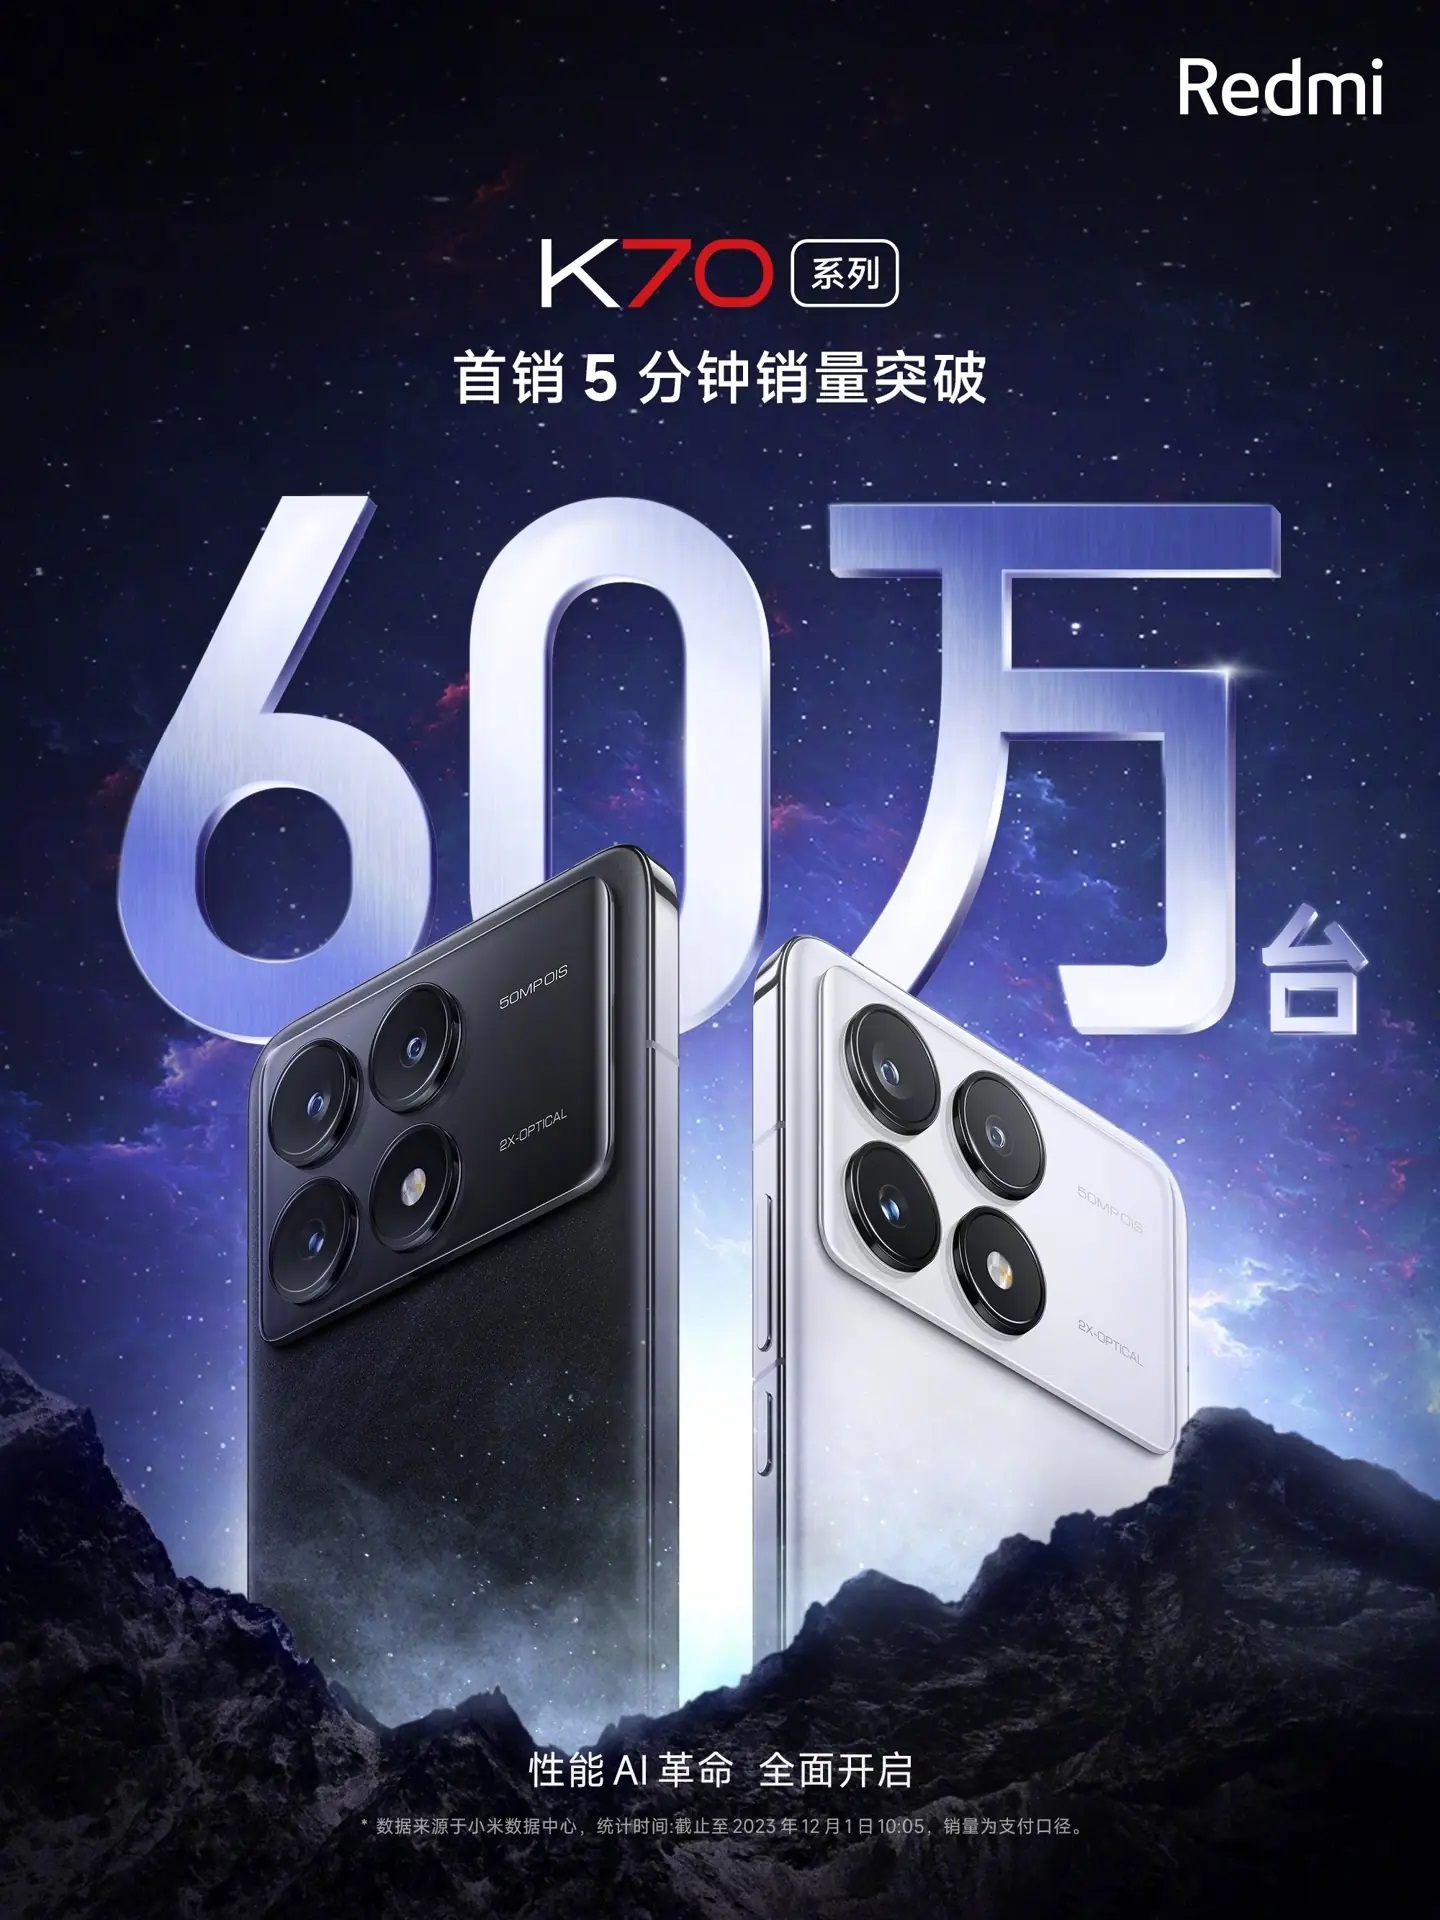 Смартфоны серии Redmi K70 пользуются высоким спросом в Китае